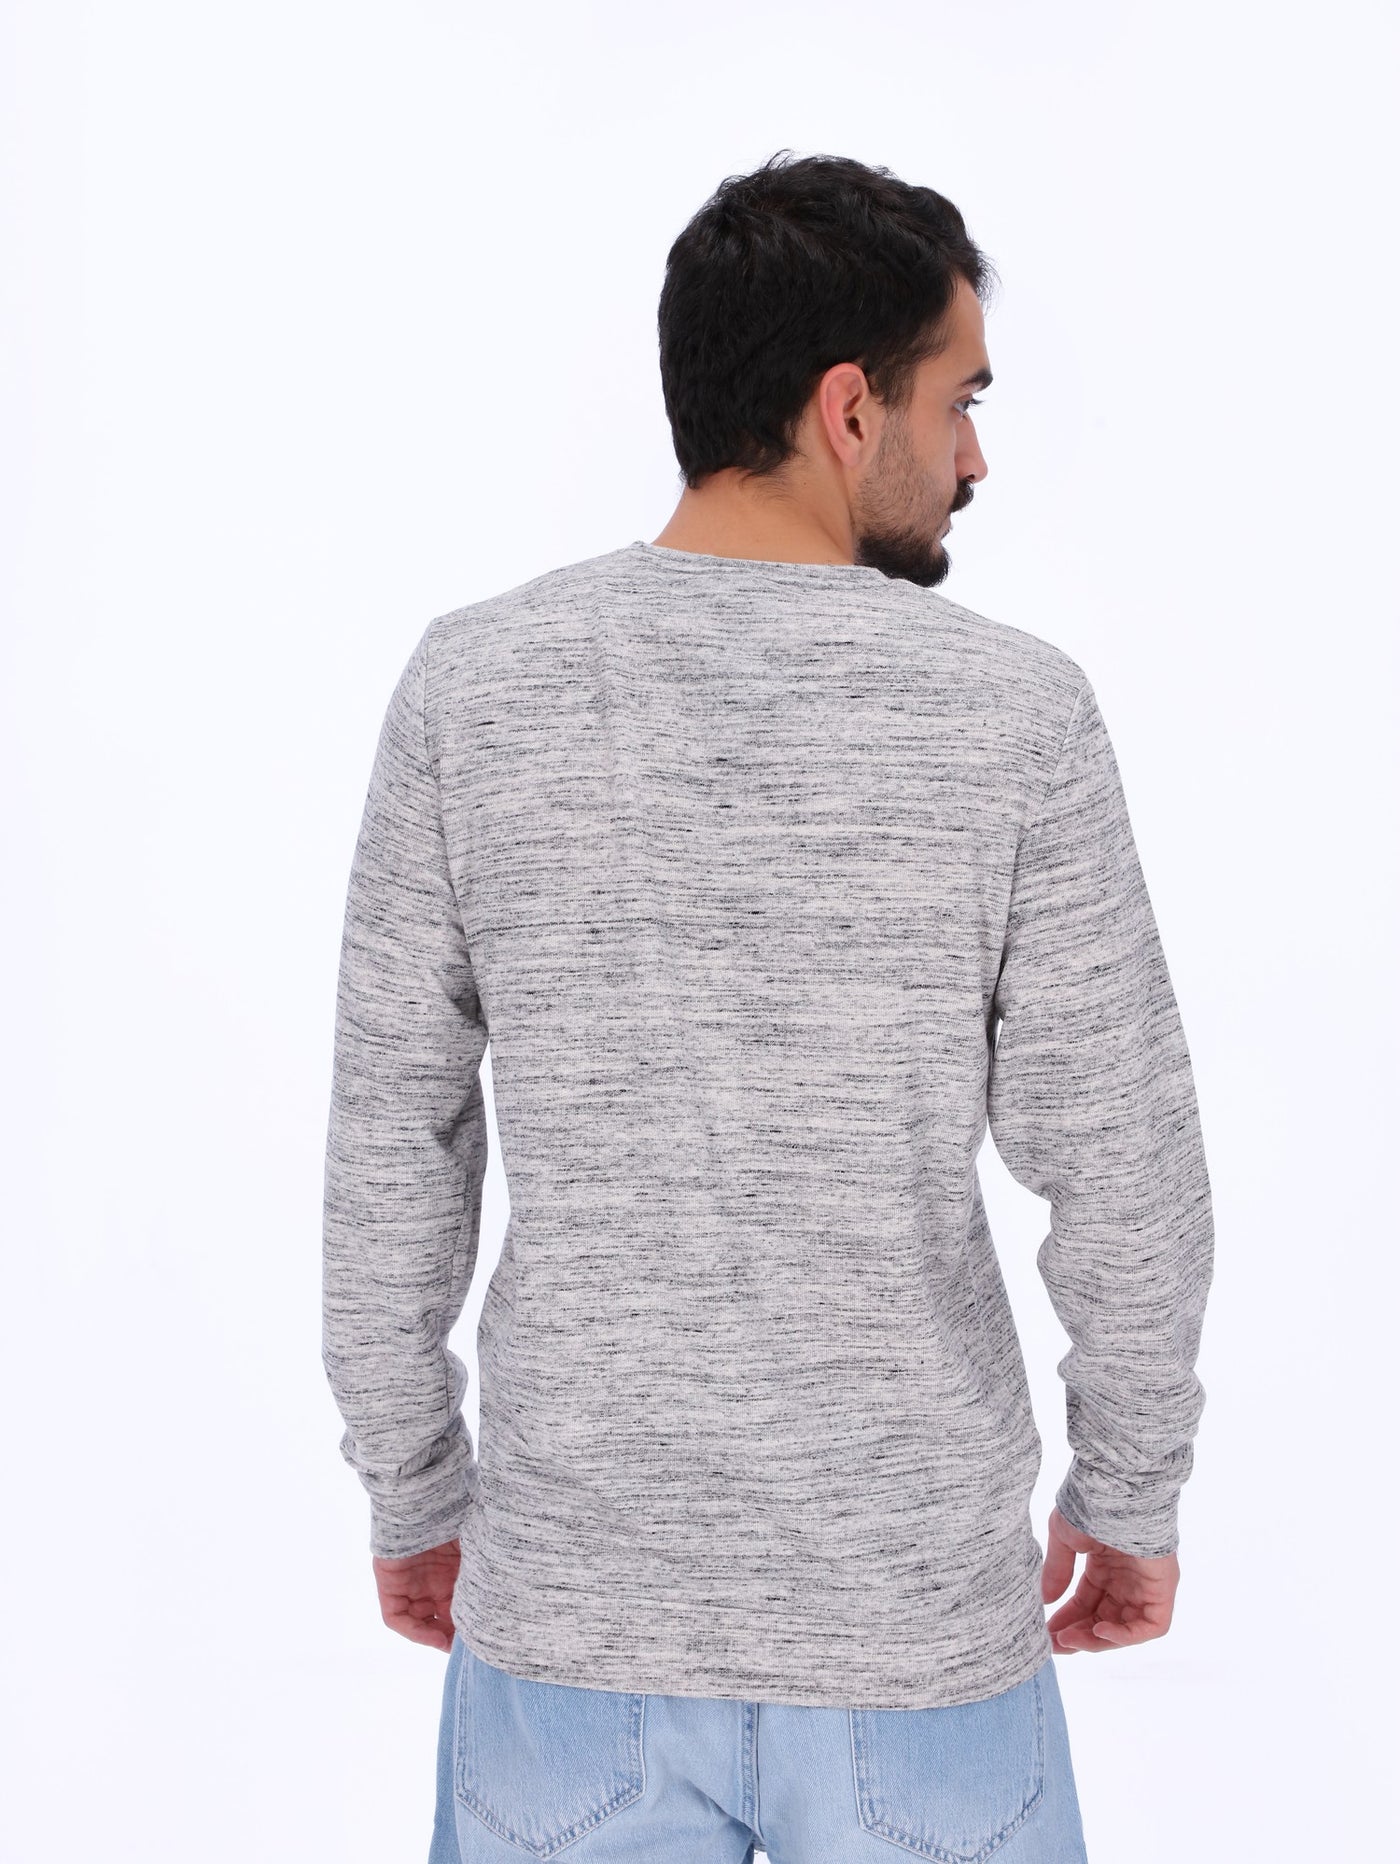 OR Men's Printed Marled Fleece Sweatshirt